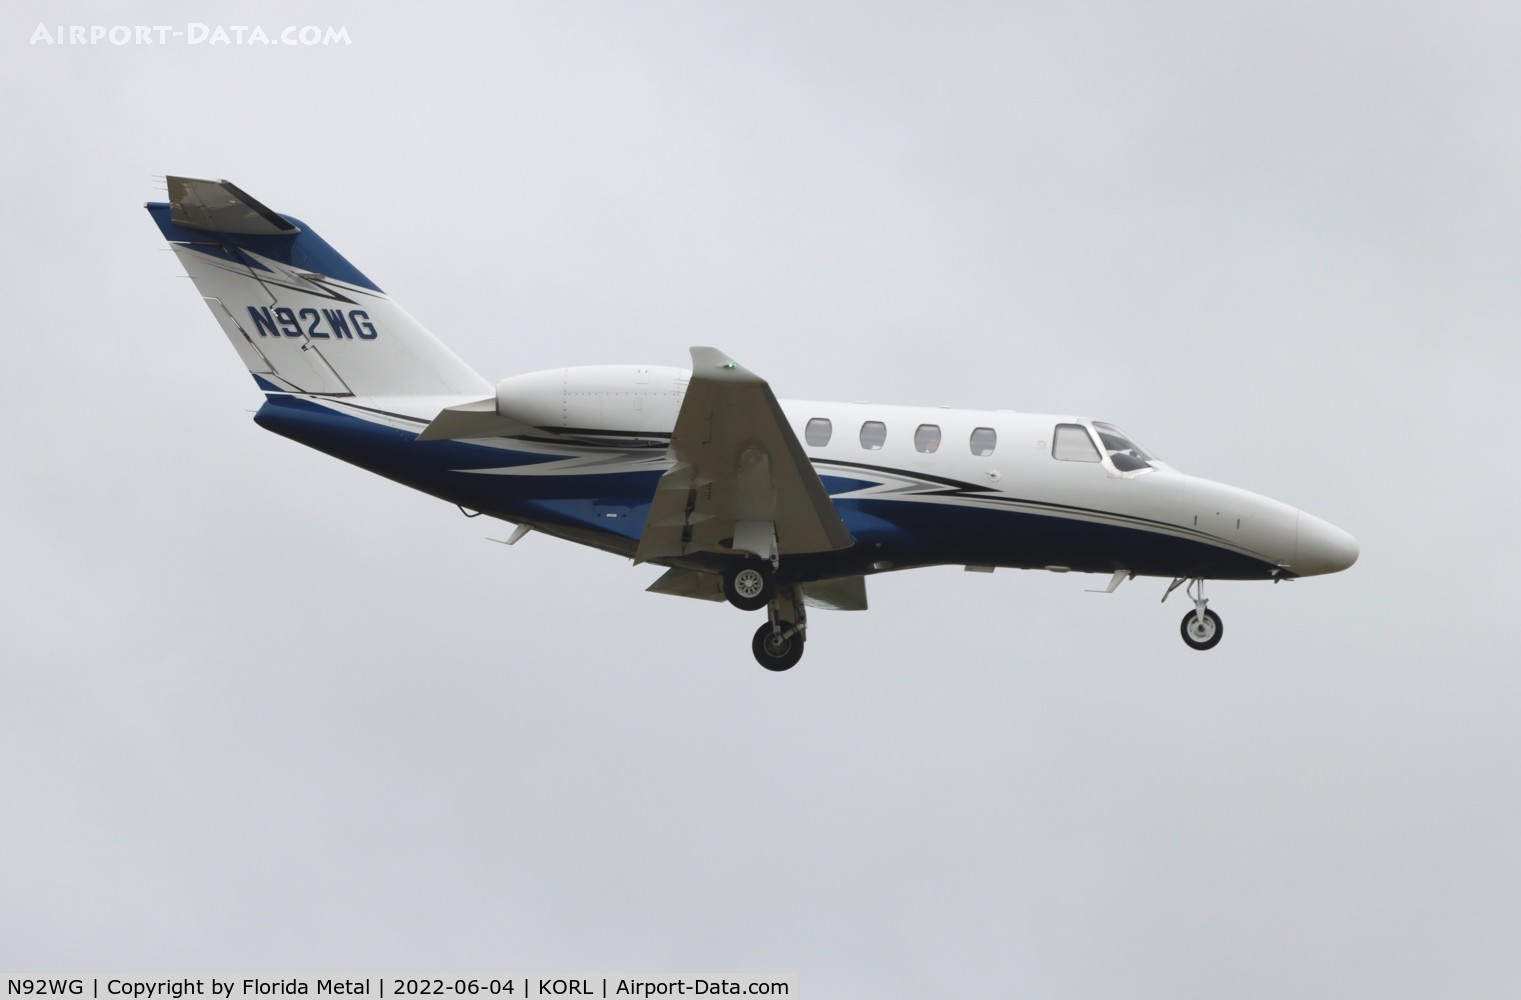 N92WG, 2015 Cessna 525 Citation M2 C/N 525-0871, C525M zx